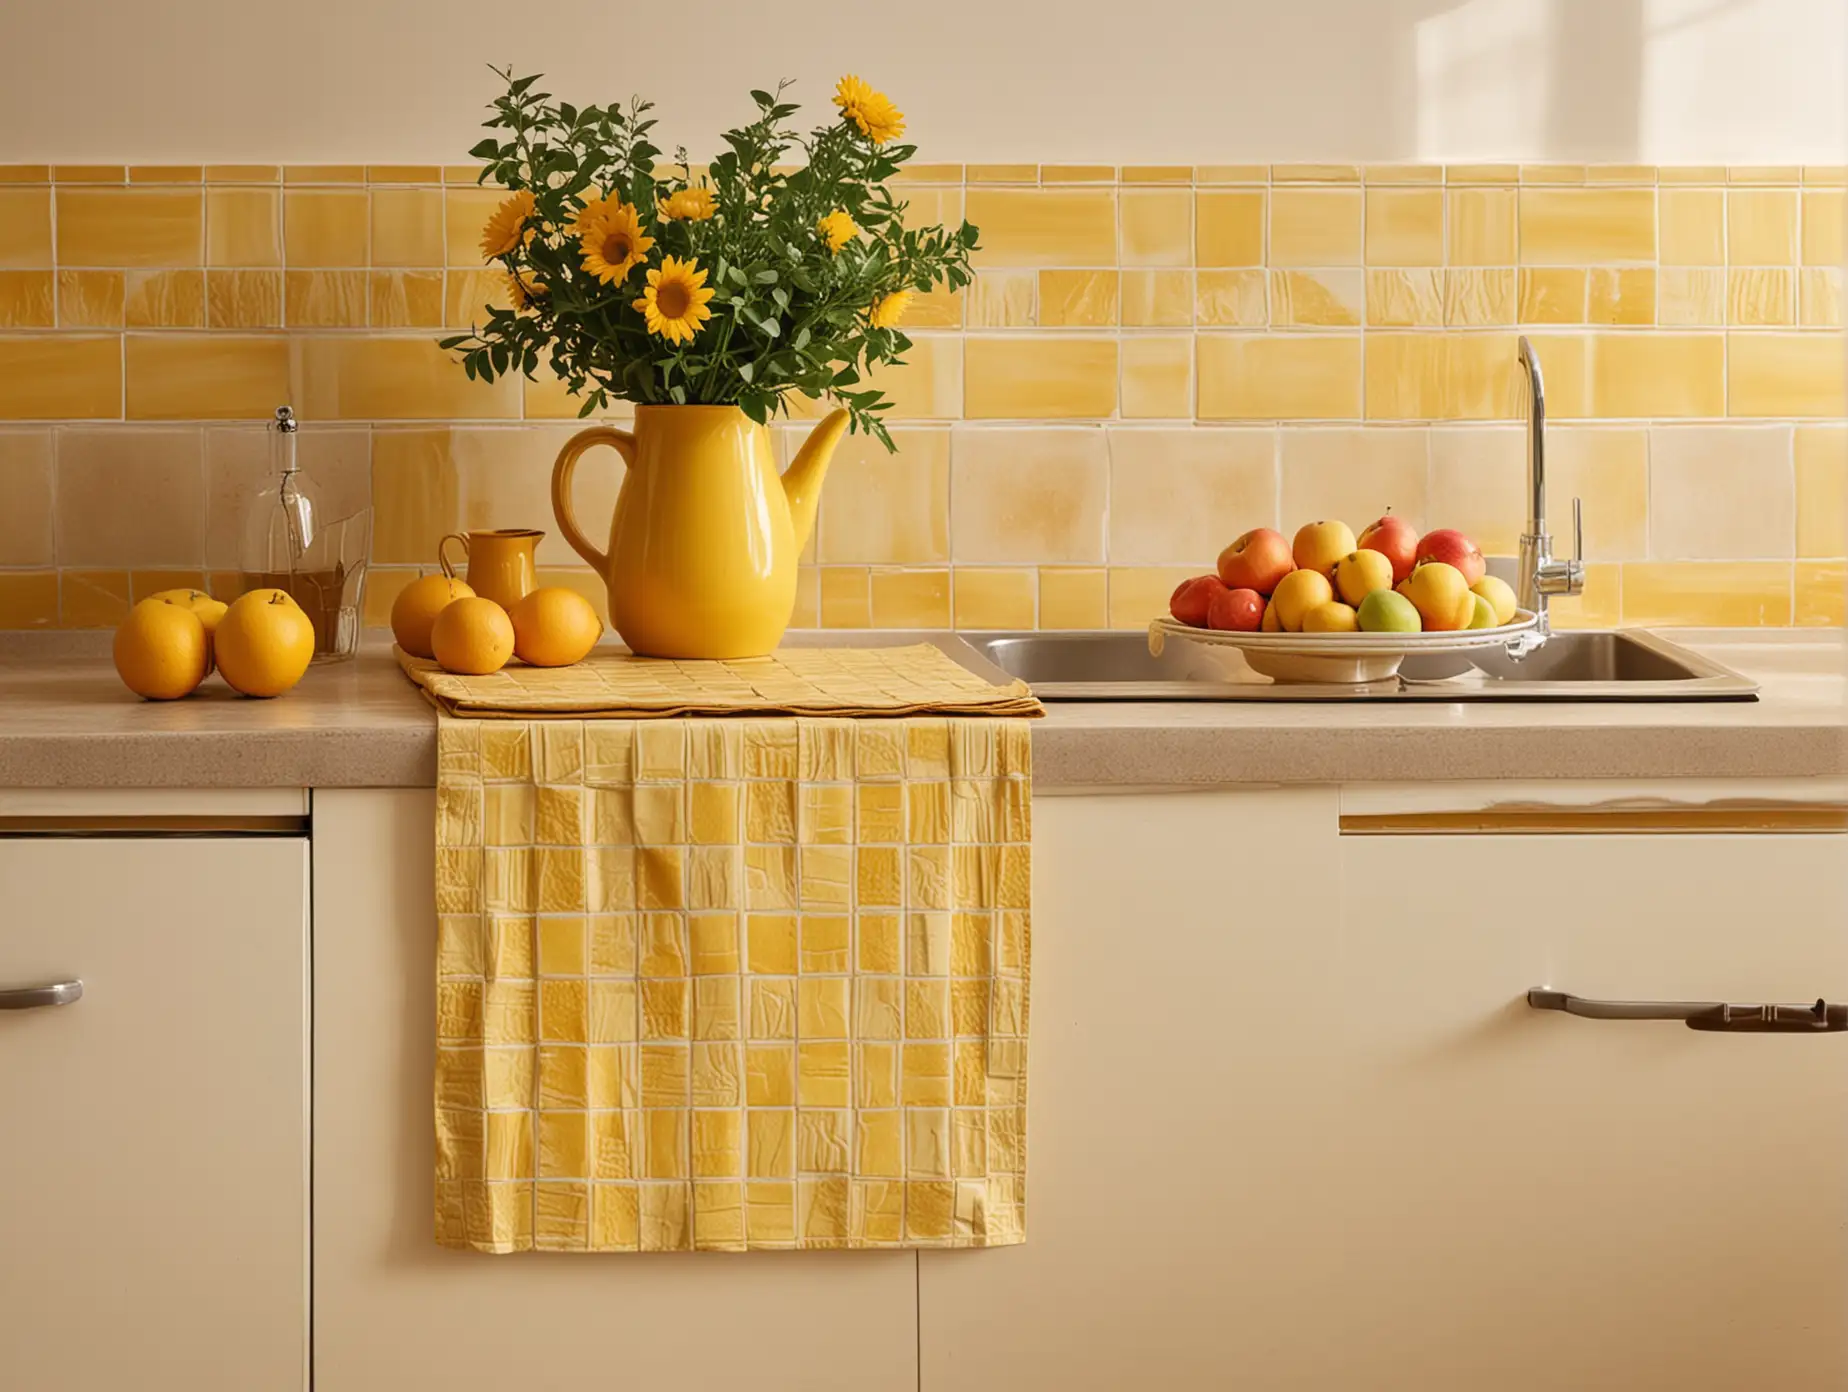 фото  кухонного фартука, фартук состоит из вытянутых прямоугольных желтых плиток, на столешнице стоит ваза, чашка, тарелка с фруктами, теплый яркий свет